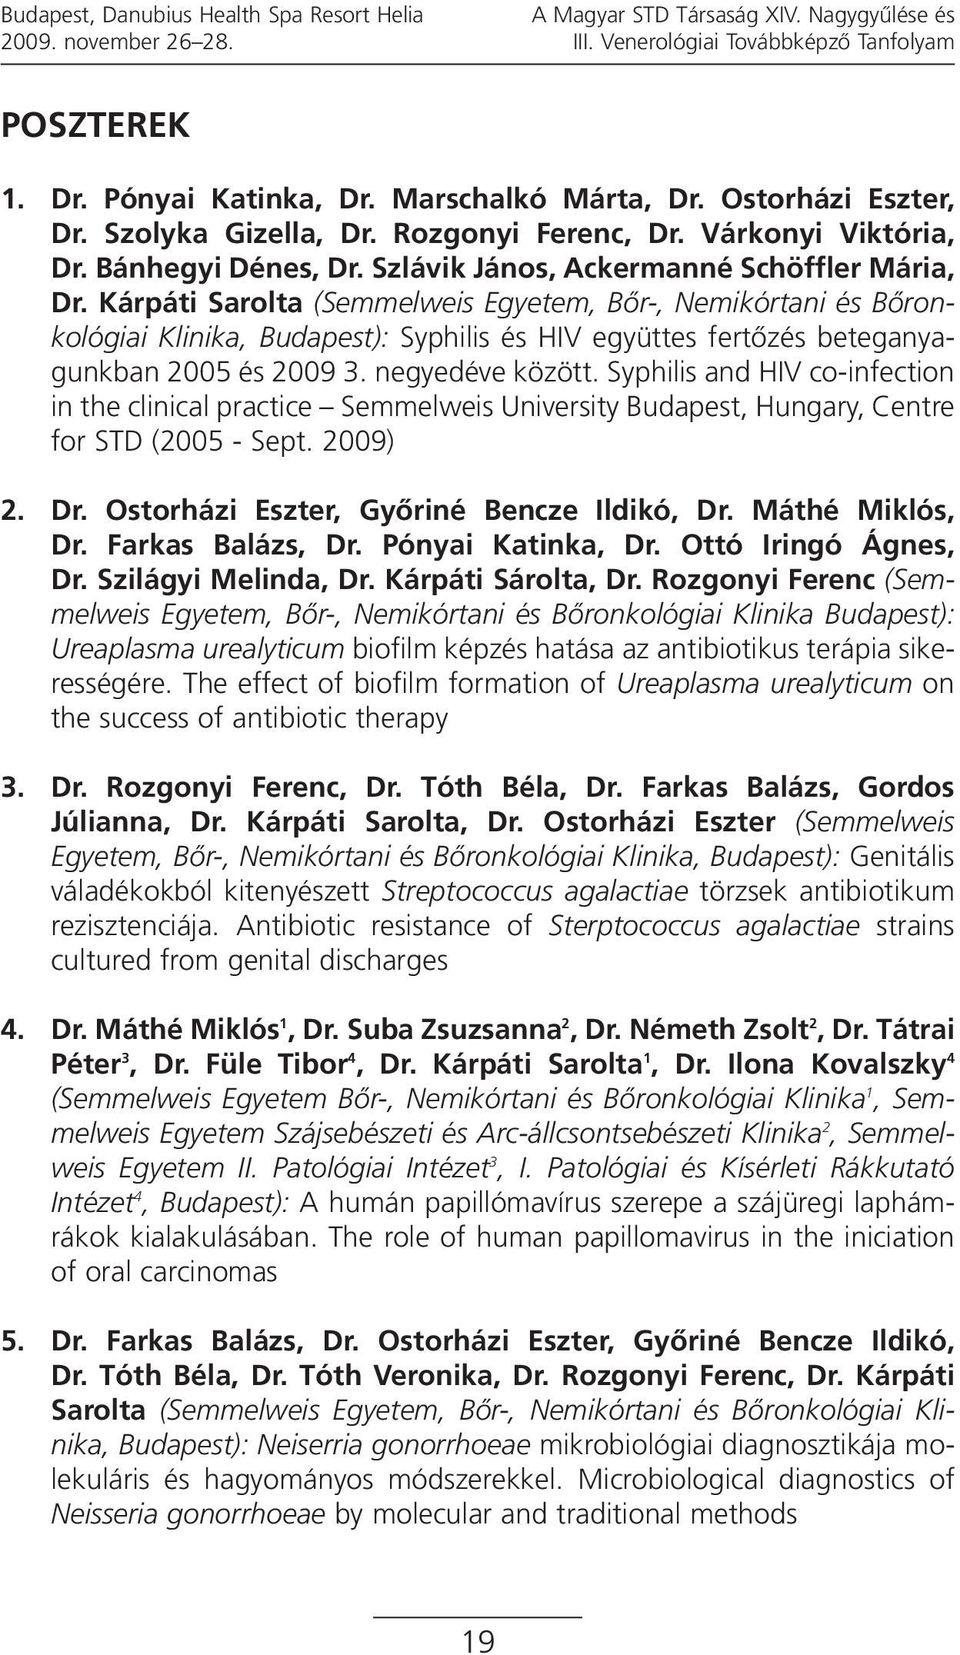 Kárpáti Sarolta (Semmelweis Egyetem, Bőr-, Nemikórtani és Bőronkológiai Klinika, Budapest): Syphilis és HIV együttes fertőzés beteganyagunkban 2005 és 2009 3. negyedéve között.